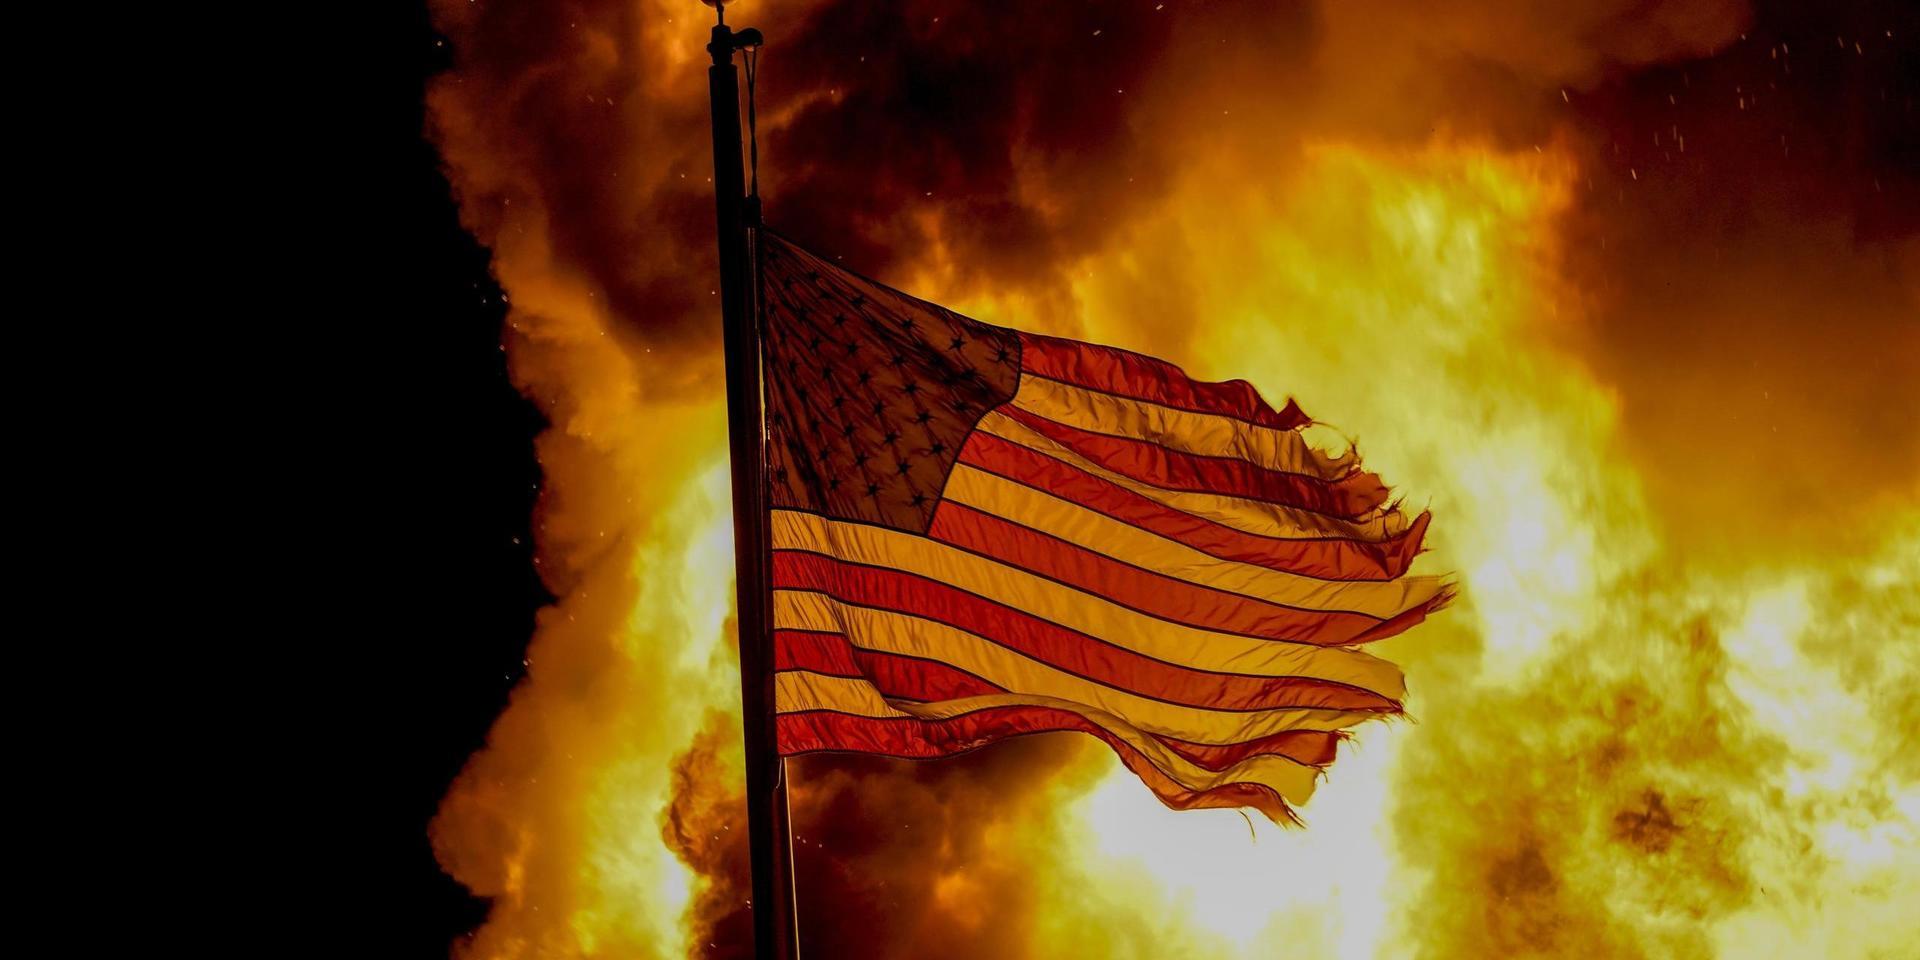 En amerikansk flagga vid en kriminalvårdsanstalt som sattes i brand under protesterna i Kenosha, Wisconsin, i augusti förra året.